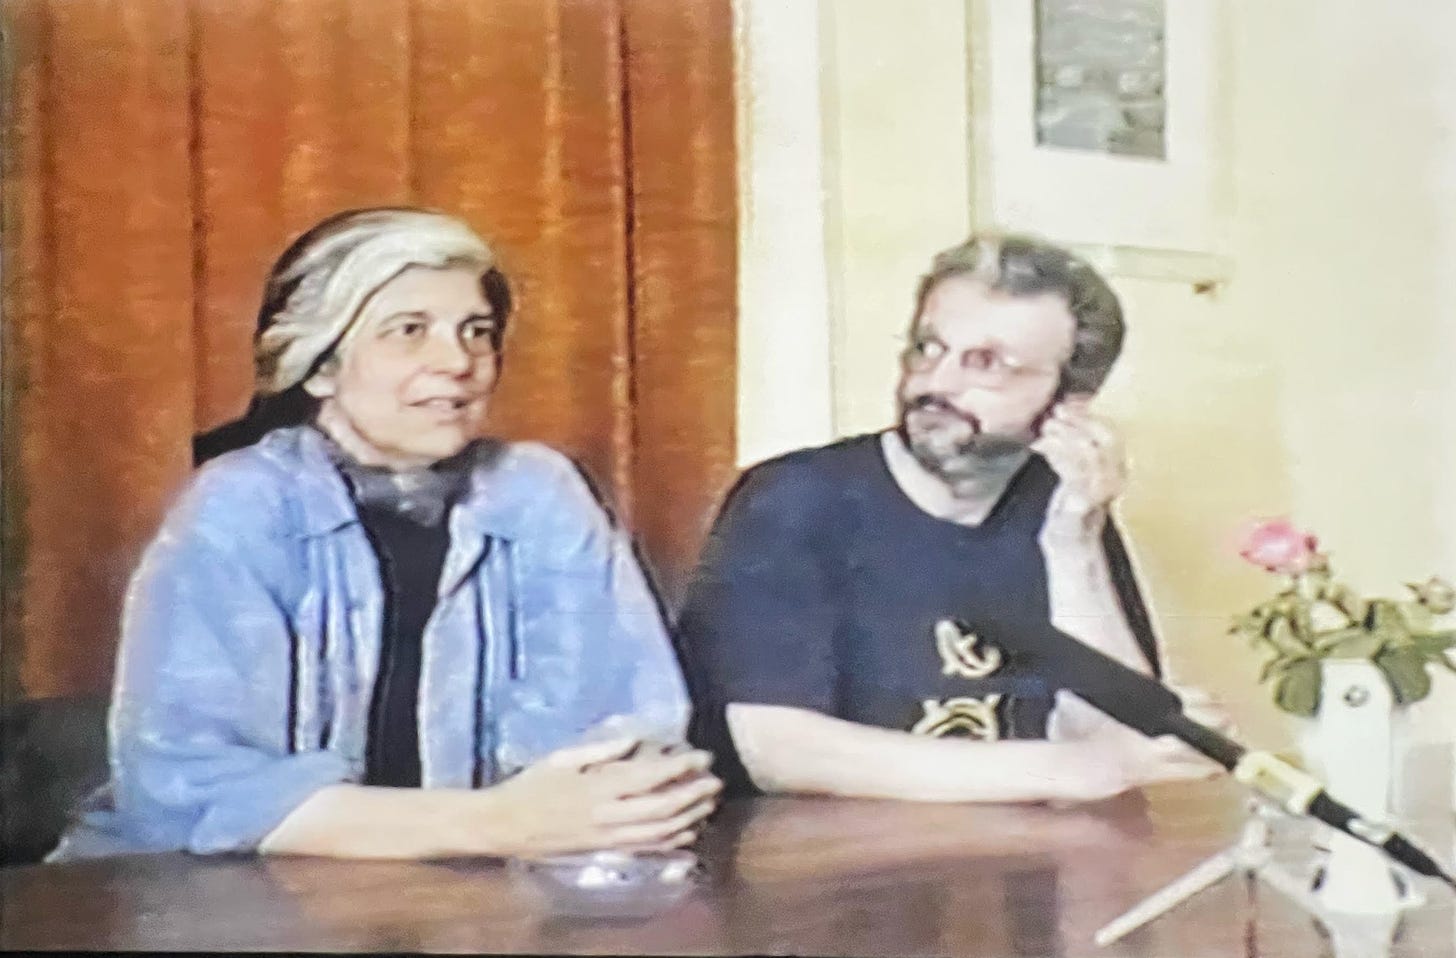 Susan Sontag and Haris Pašović in Sarajevo, 1993.